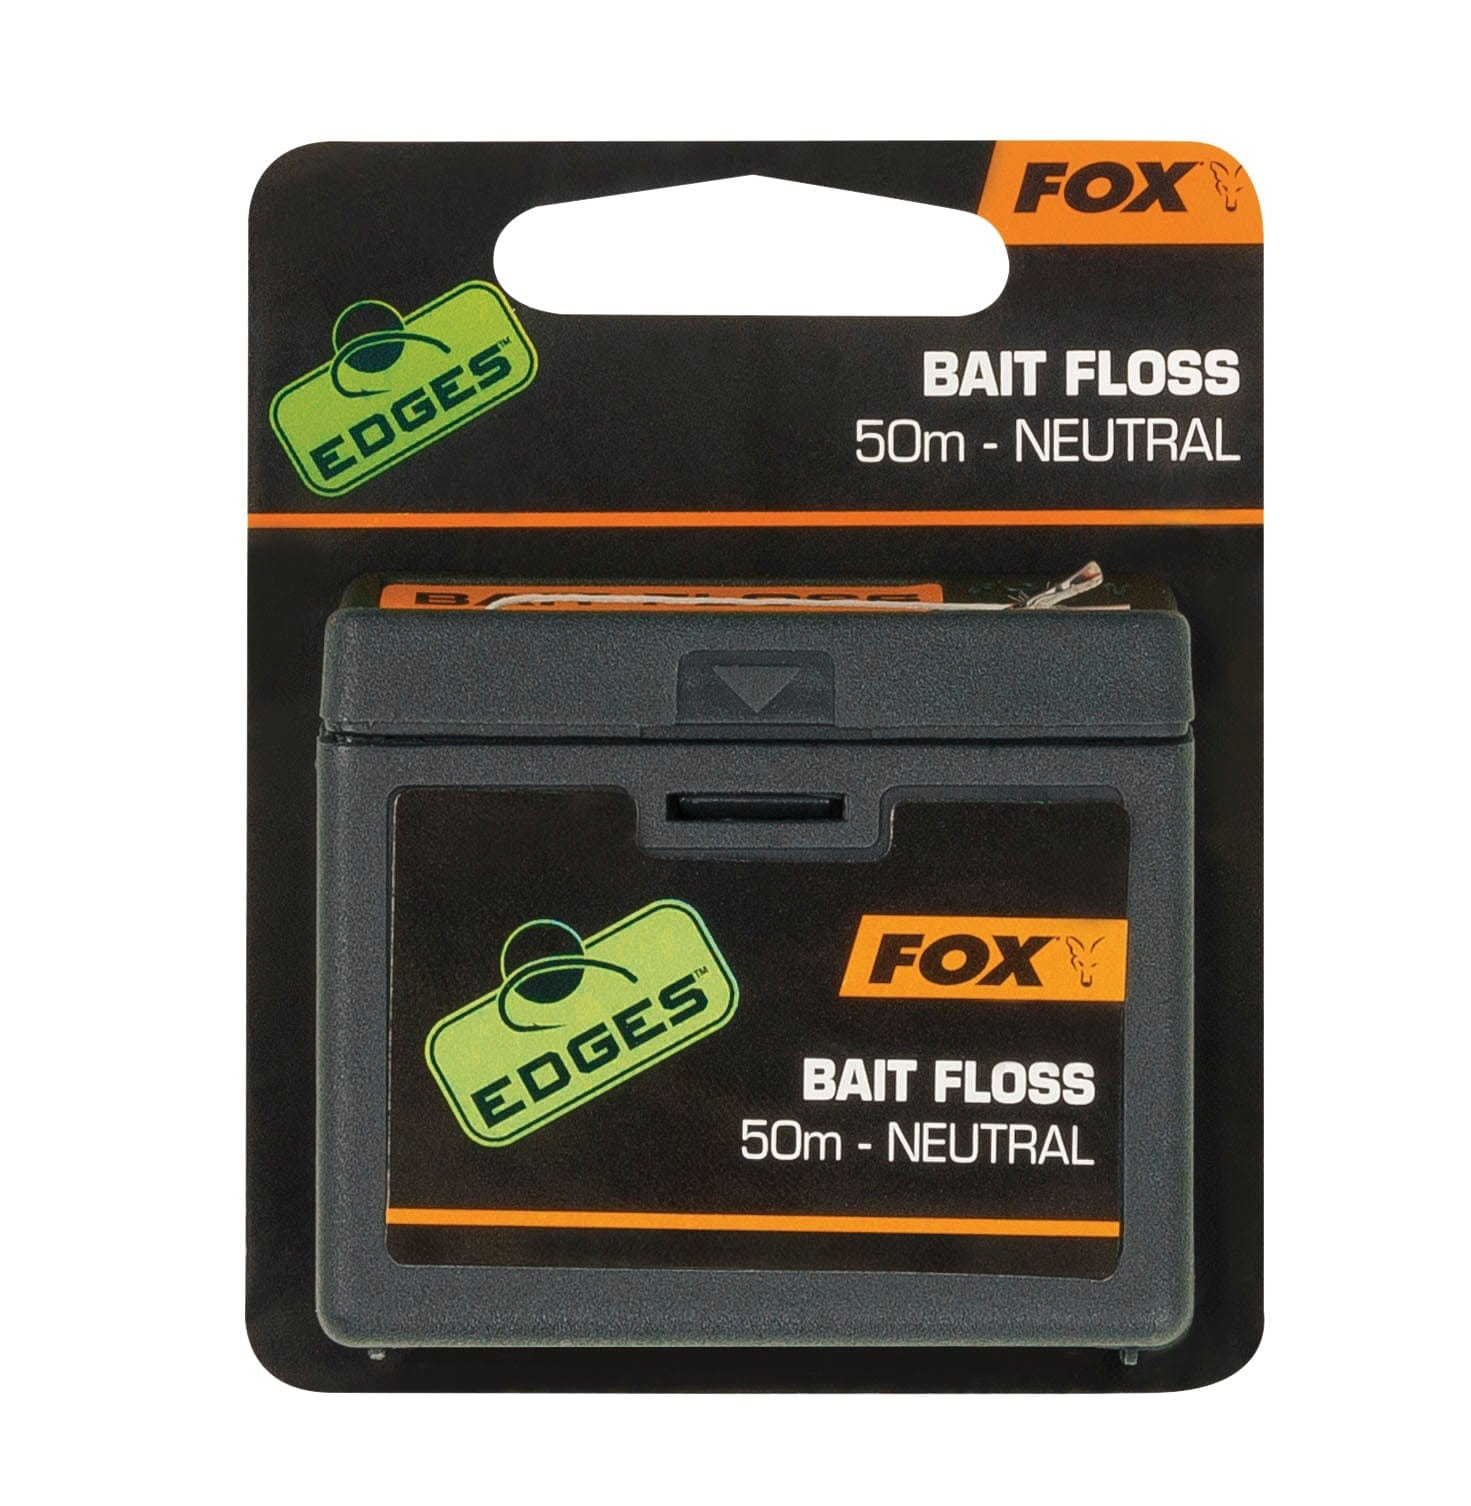 FOX Edges Bait Floss Neutral.